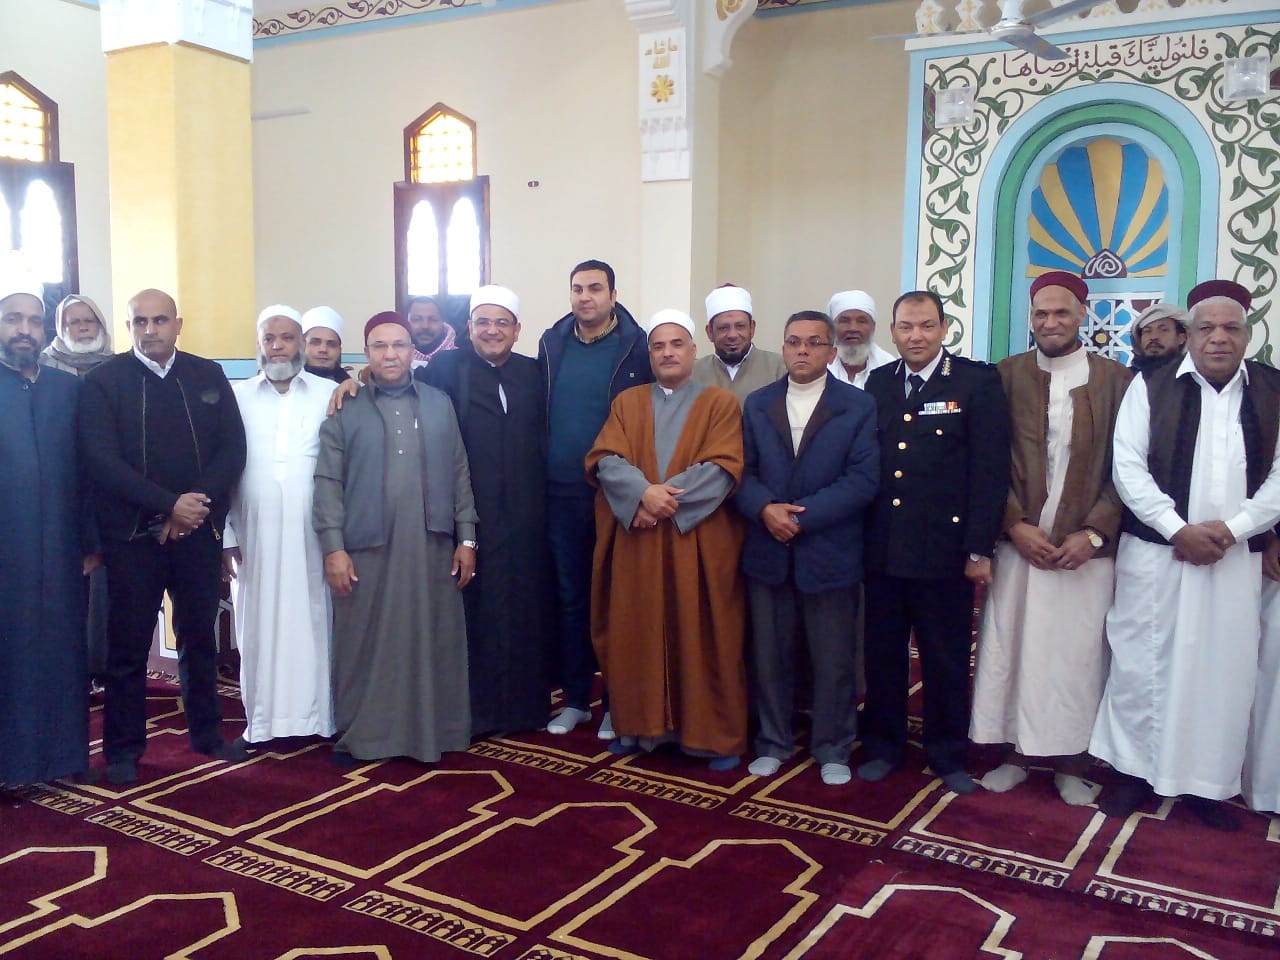   افتتاح مسجد أبو بكر الصديق بسيوة بتكلفة 1.8 مليون جنيه